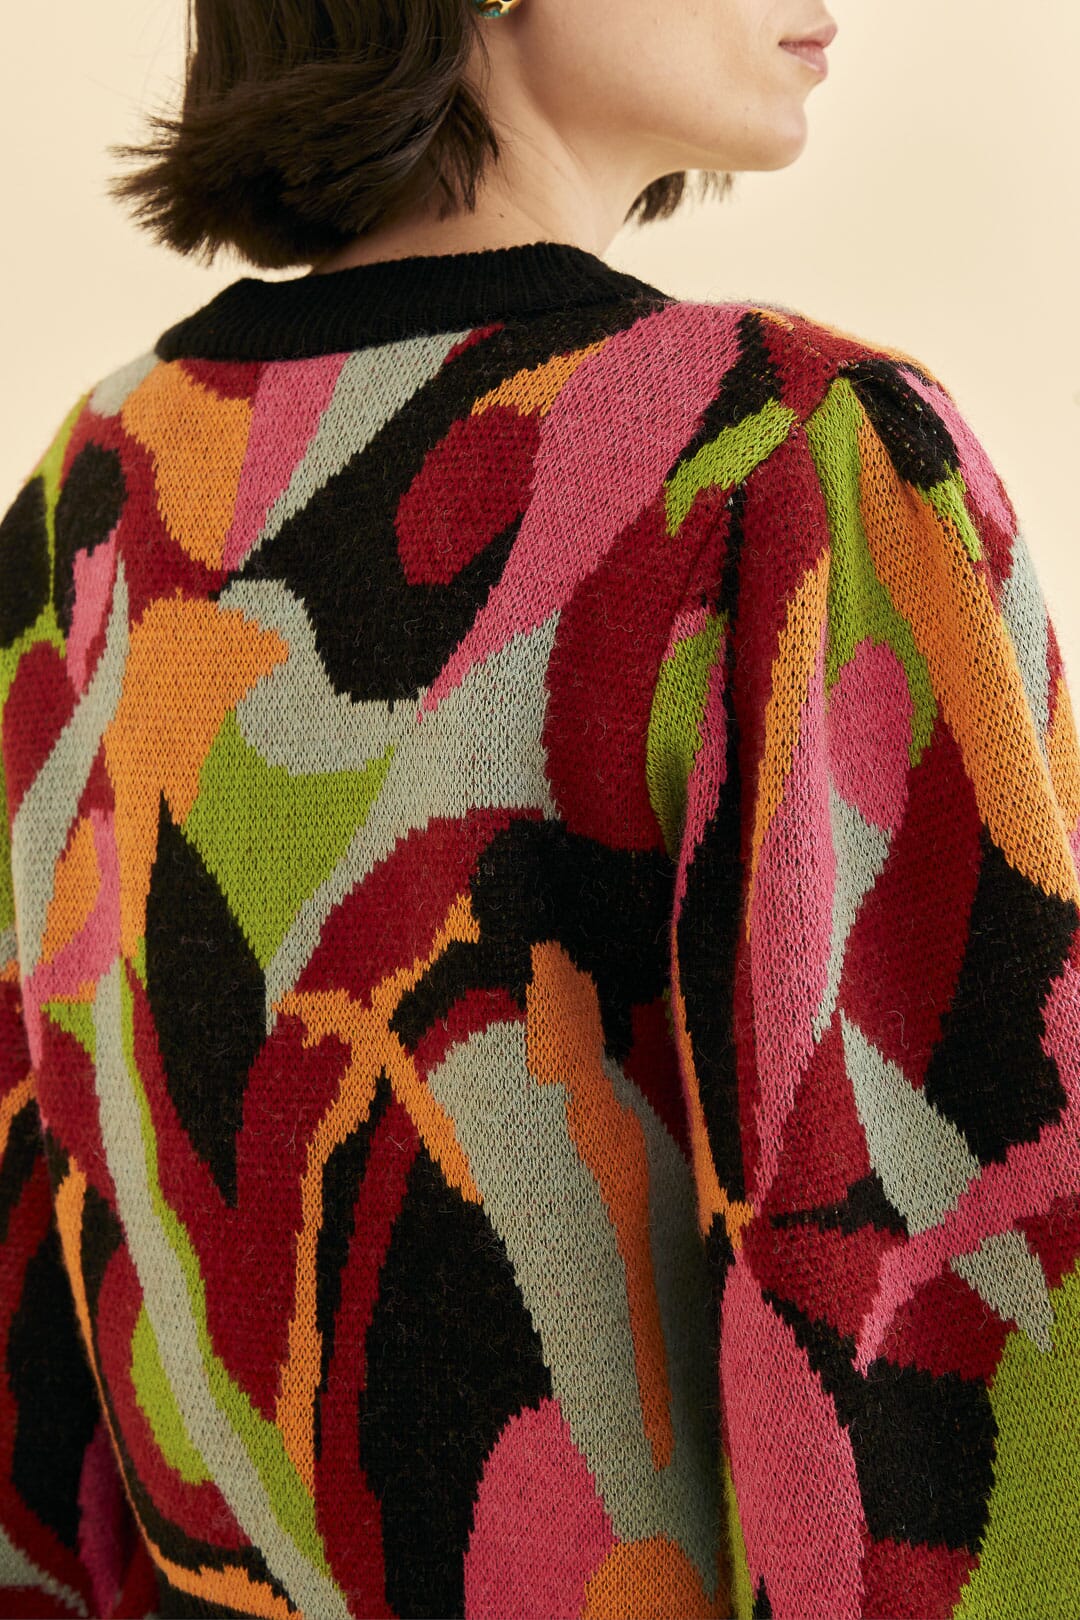 The Multicolor Dance Knit Sweater in Multi